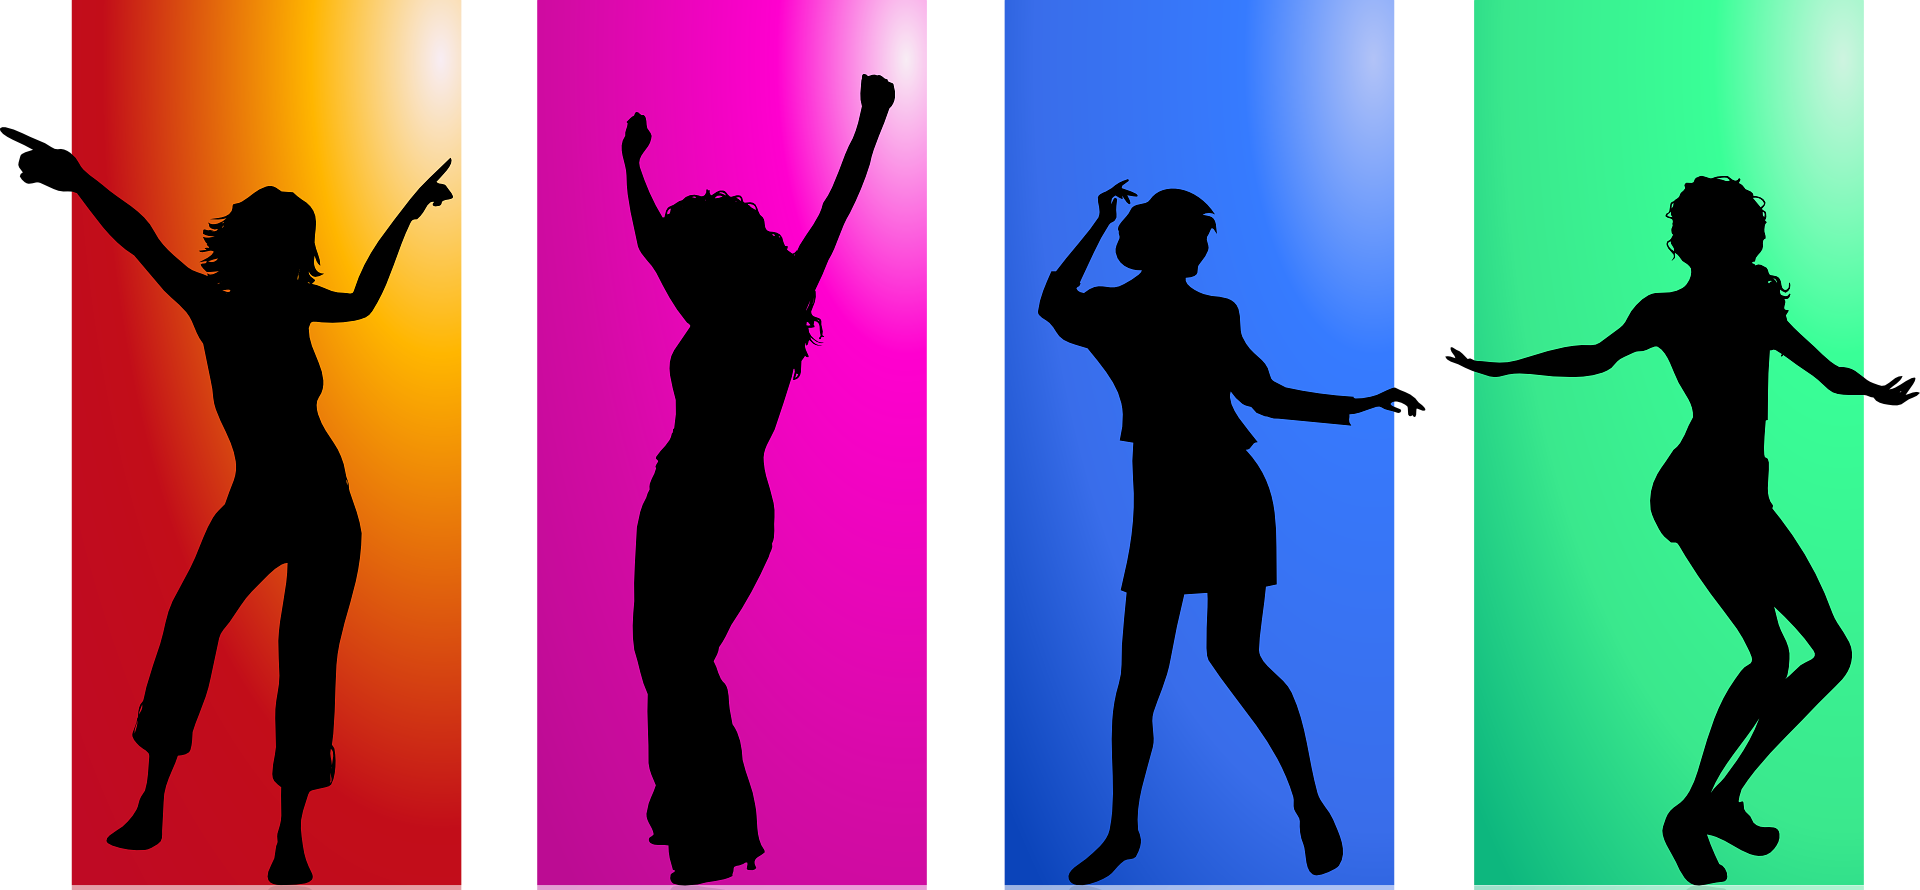 Vier tanzende Silhouetten vor farbigem Hintergrund